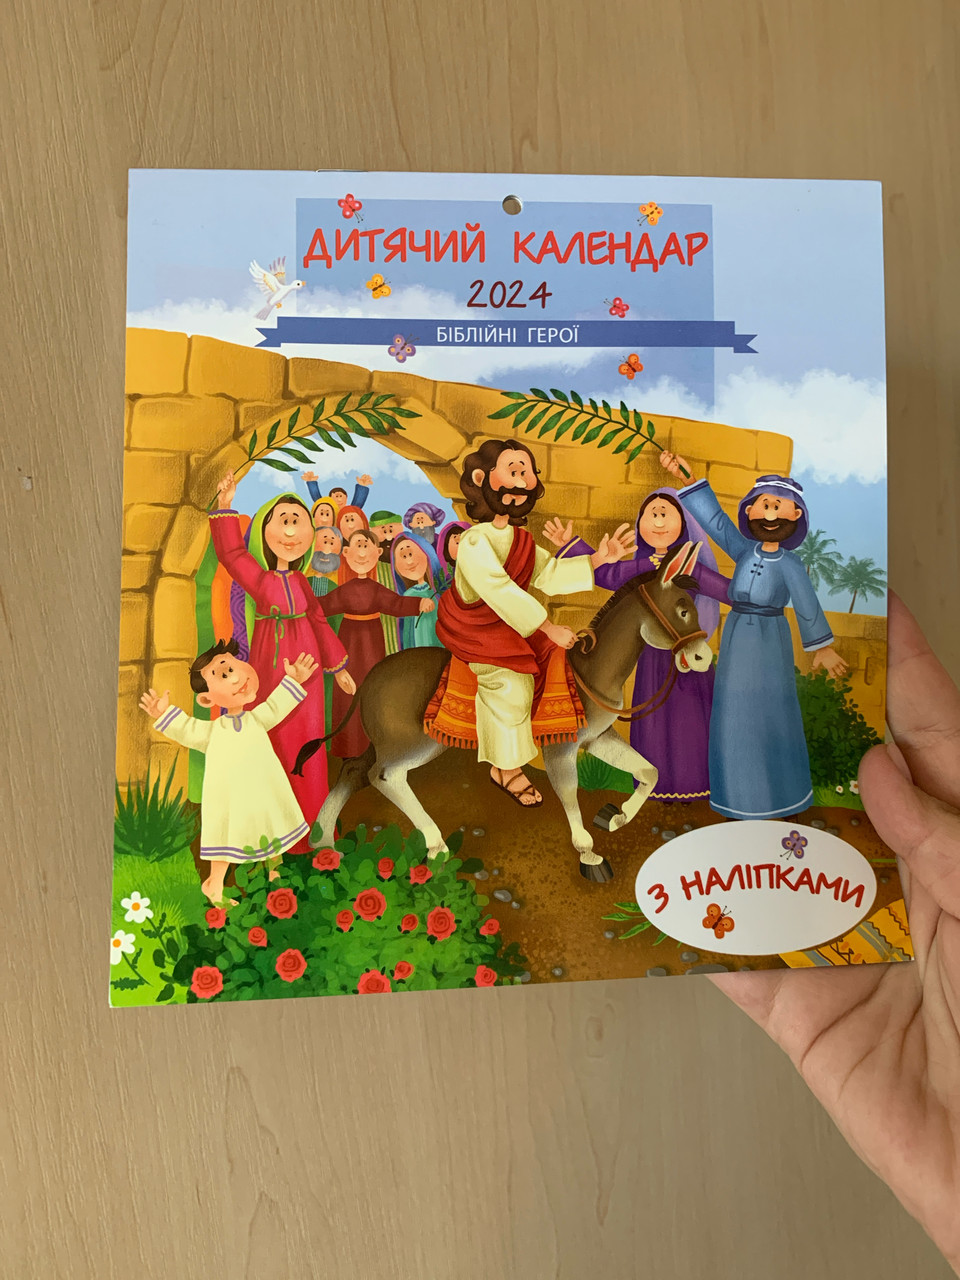 Дитячий календар на 2024 рік "Біблійні герої" (з наліпками)